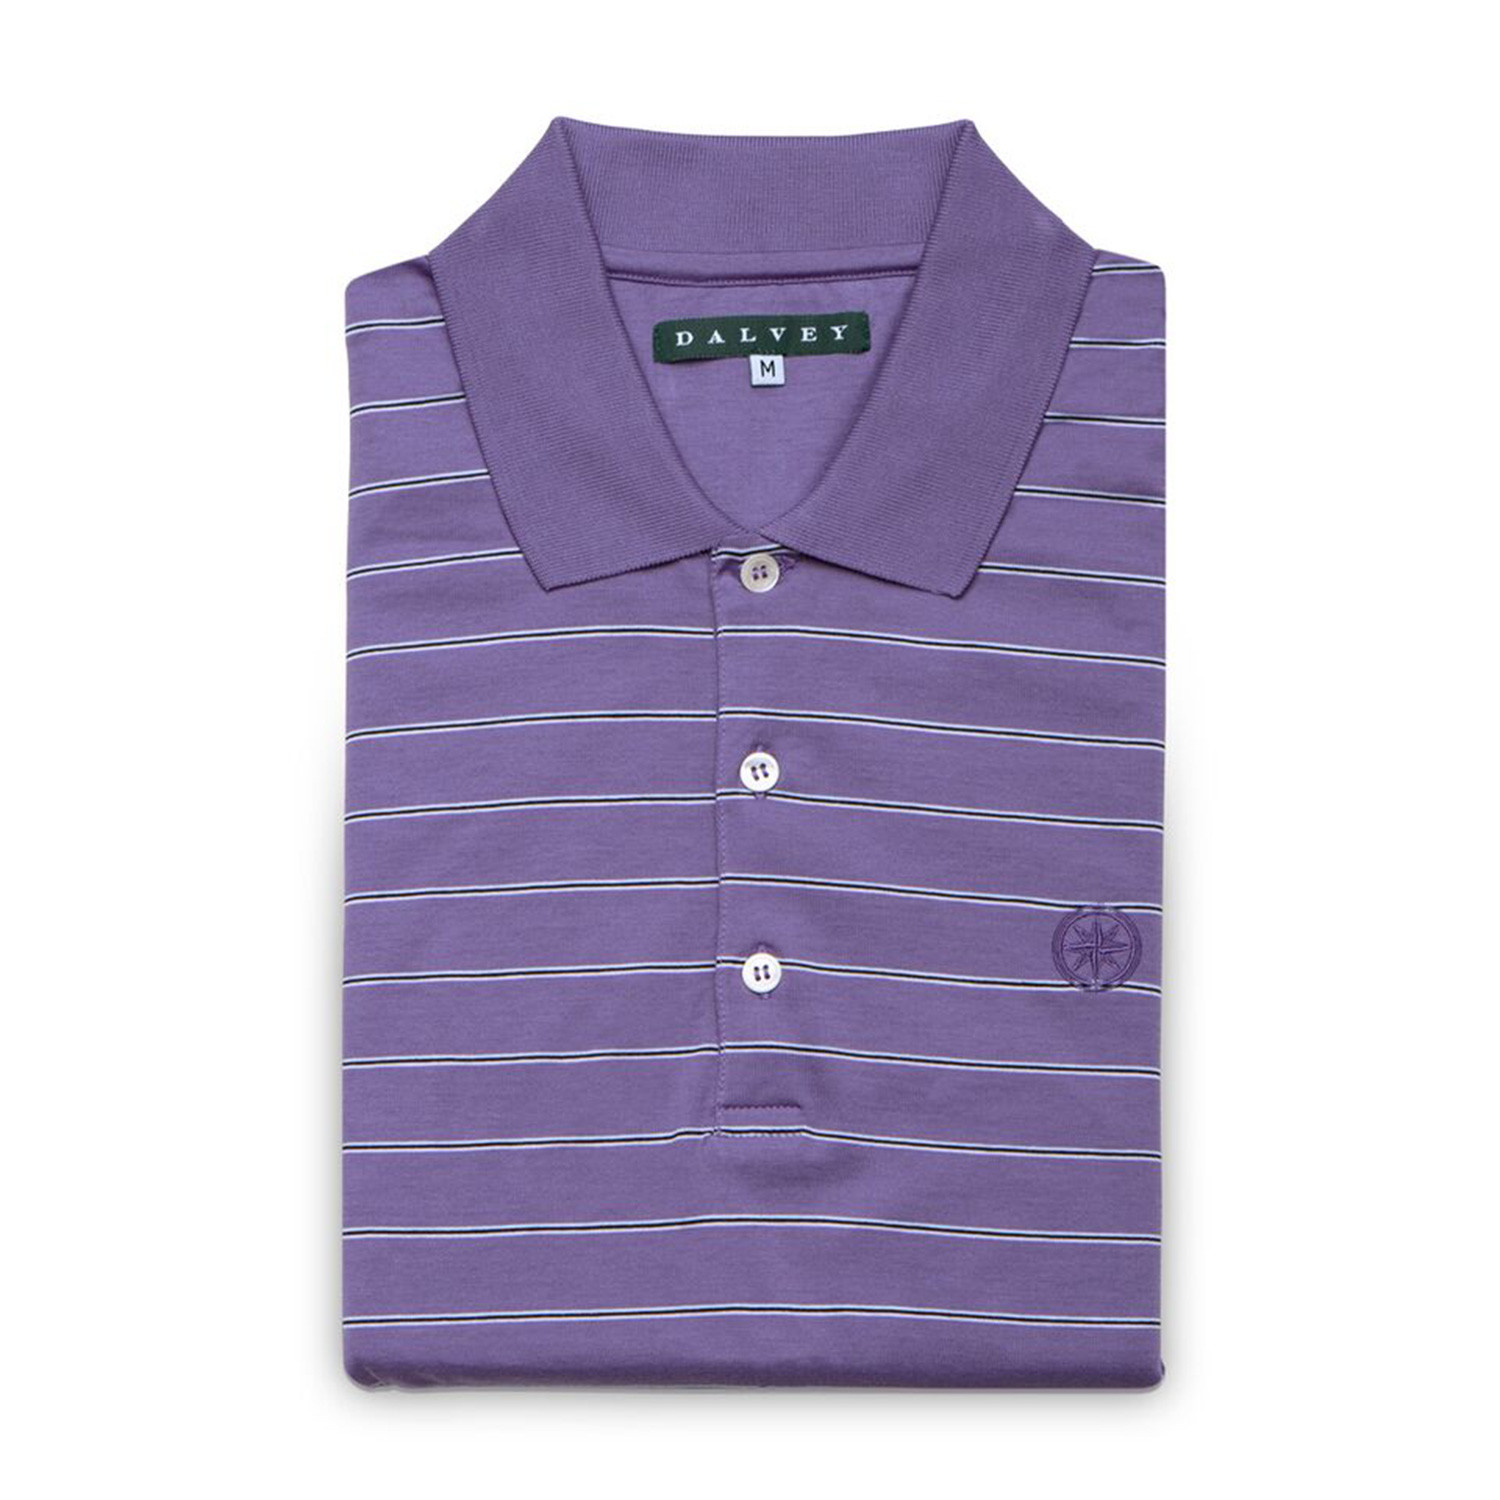 Jersey Knit Polo Shirt // Violet + Black Stripe (M) - Dalvey - Touch of ...